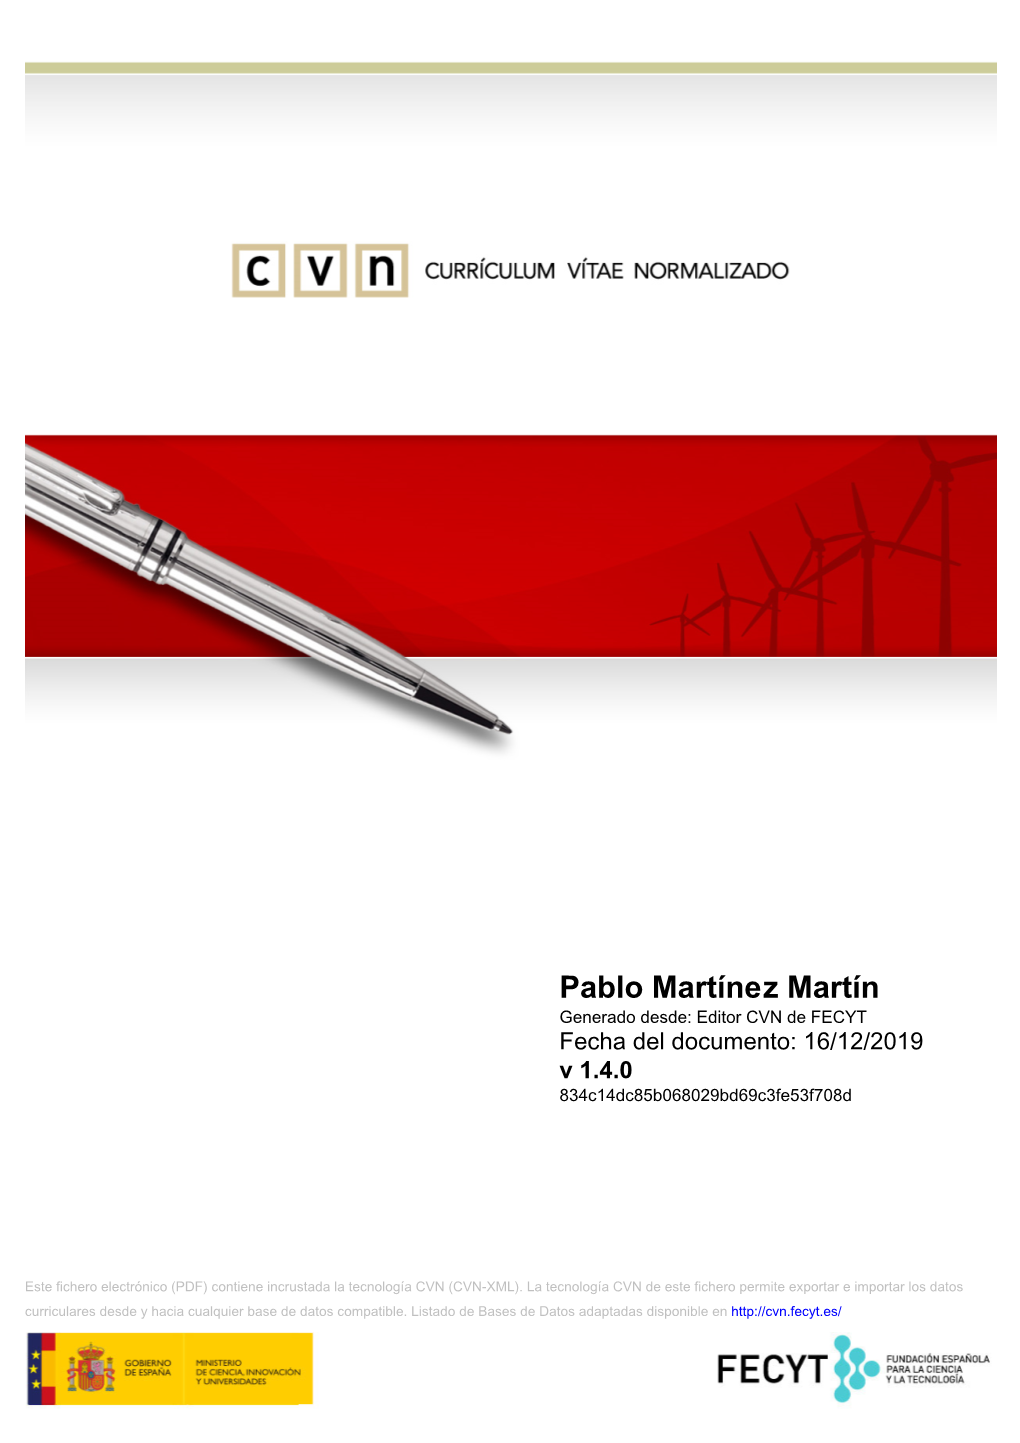 Pablo Martínez Martín Generado Desde: Editor CVN De FECYT Fecha Del Documento: 16/12/2019 V 1.4.0 834C14dc85b068029bd69c3fe53f708d